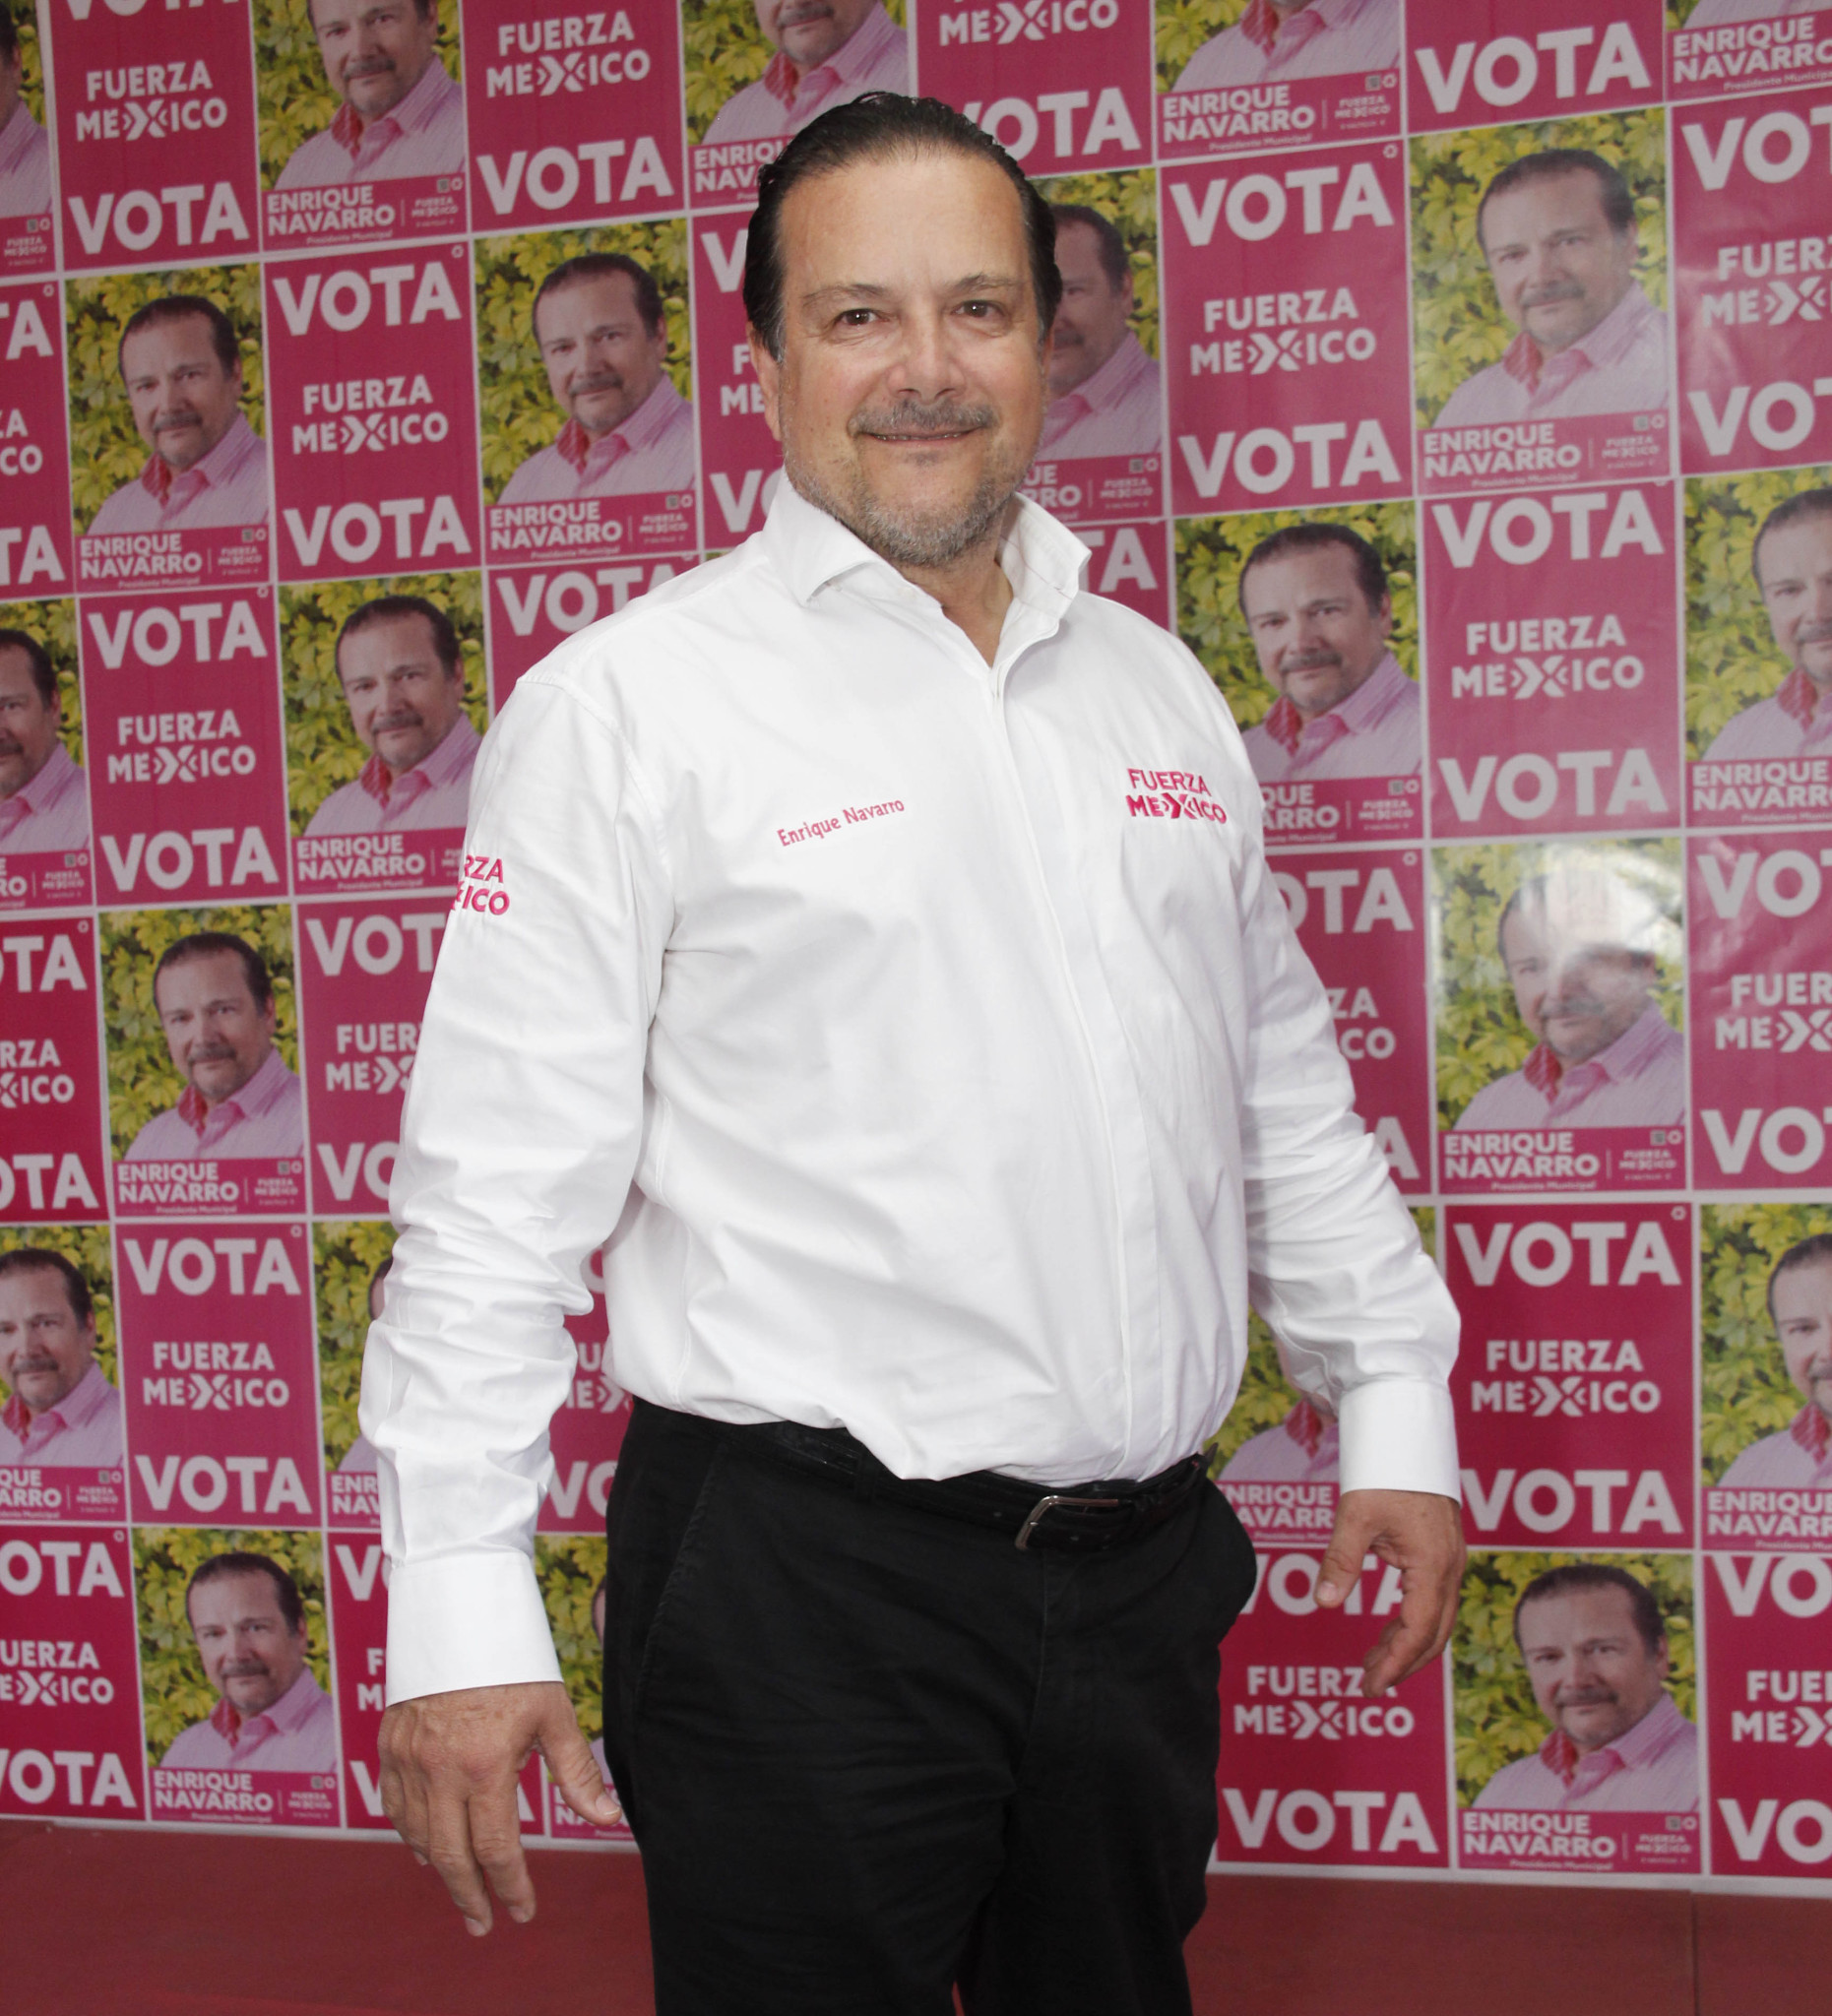 $!Elecciones Coahuila 2021 | Enrique navarro: El ciudadano tiene que ser el centro del ejercicio público’